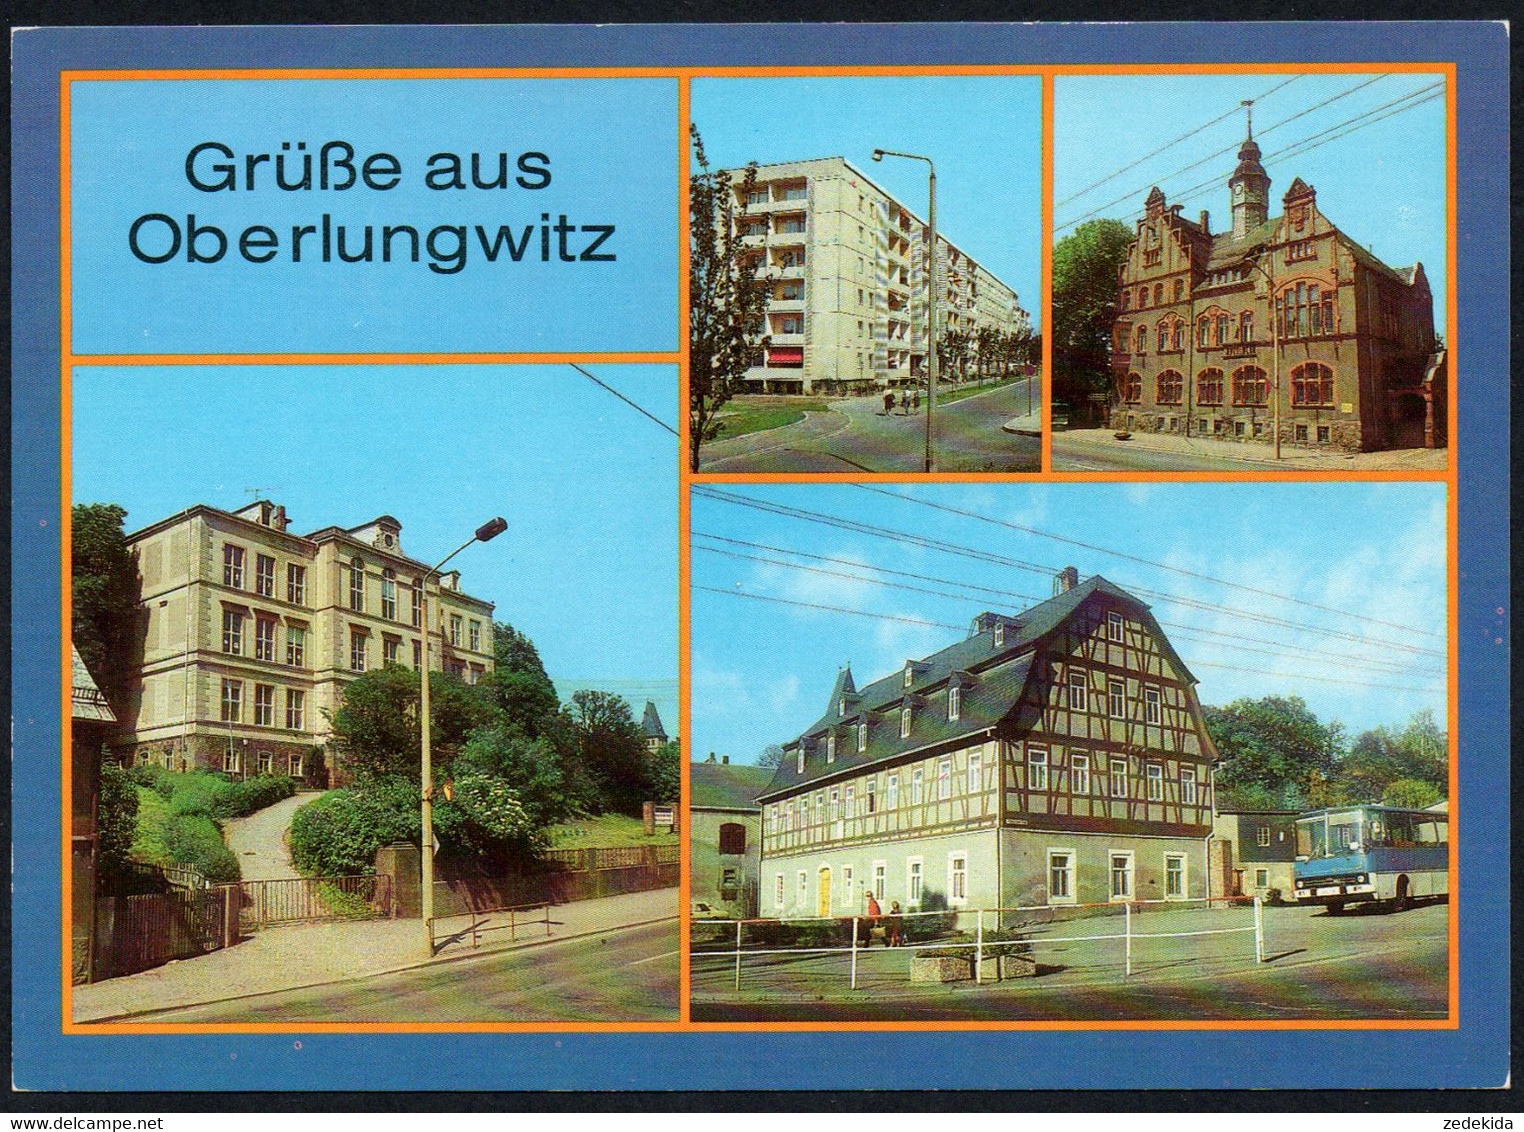 E8059 - TOP Oberlungwitz - Ikarus Omnibus - Bild Und Heimat Reichenbach - Hohenstein-Ernstthal